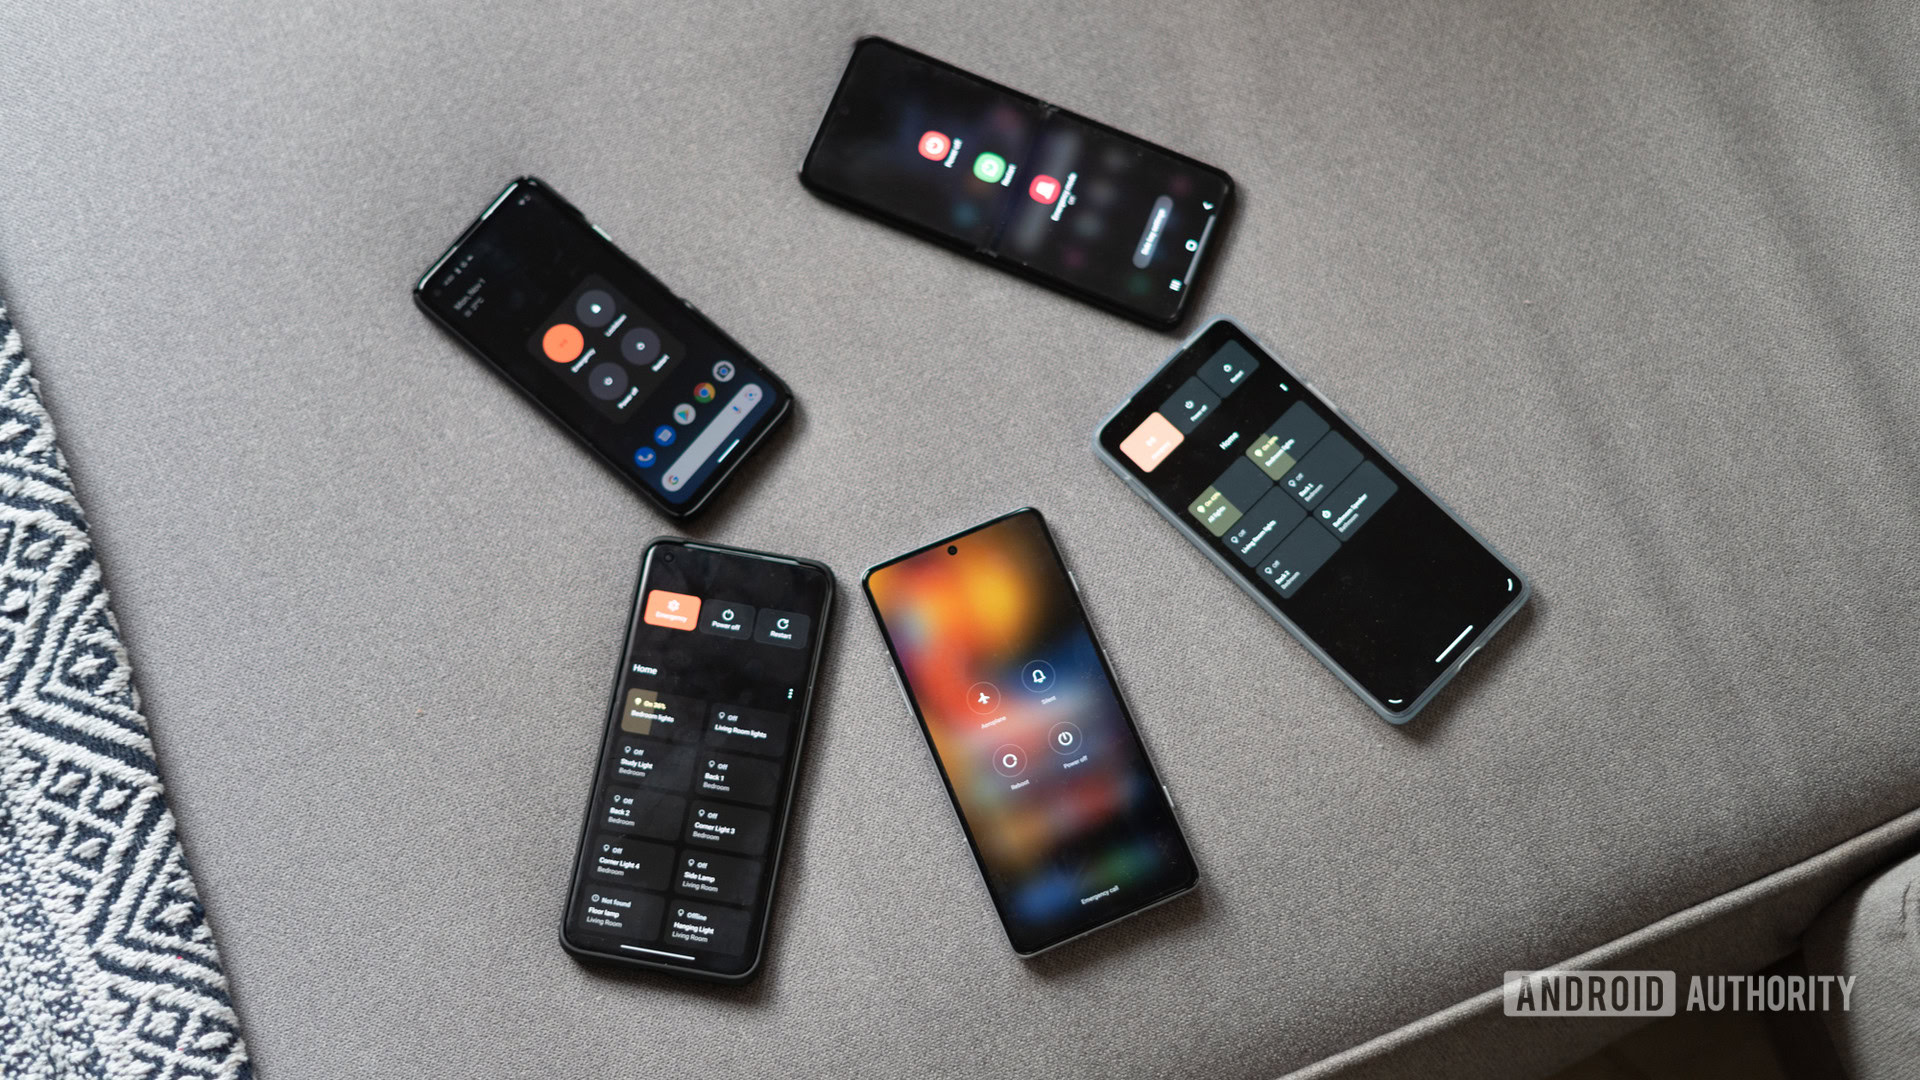 boutons d'alimentation sur les téléphones Android de haut en bas montrant plusieurs téléphones